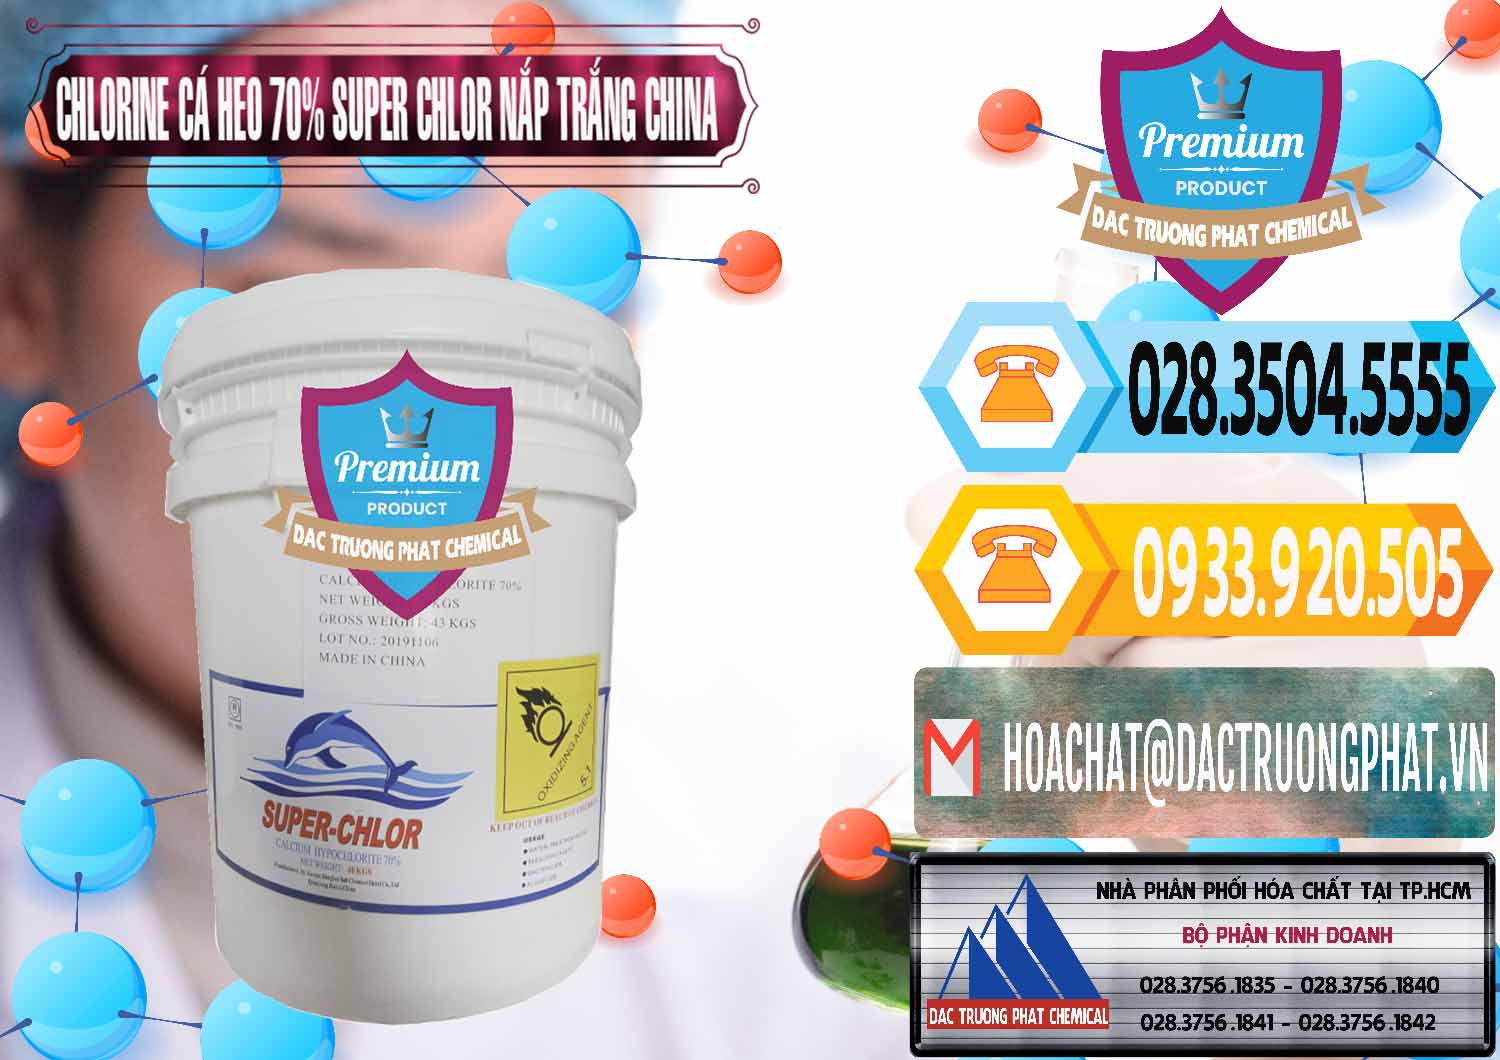 Cung cấp & bán Clorin - Chlorine Cá Heo 70% Super Chlor Nắp Trắng Trung Quốc China - 0240 - Phân phối _ cung cấp hóa chất tại TP.HCM - hoachattayrua.net